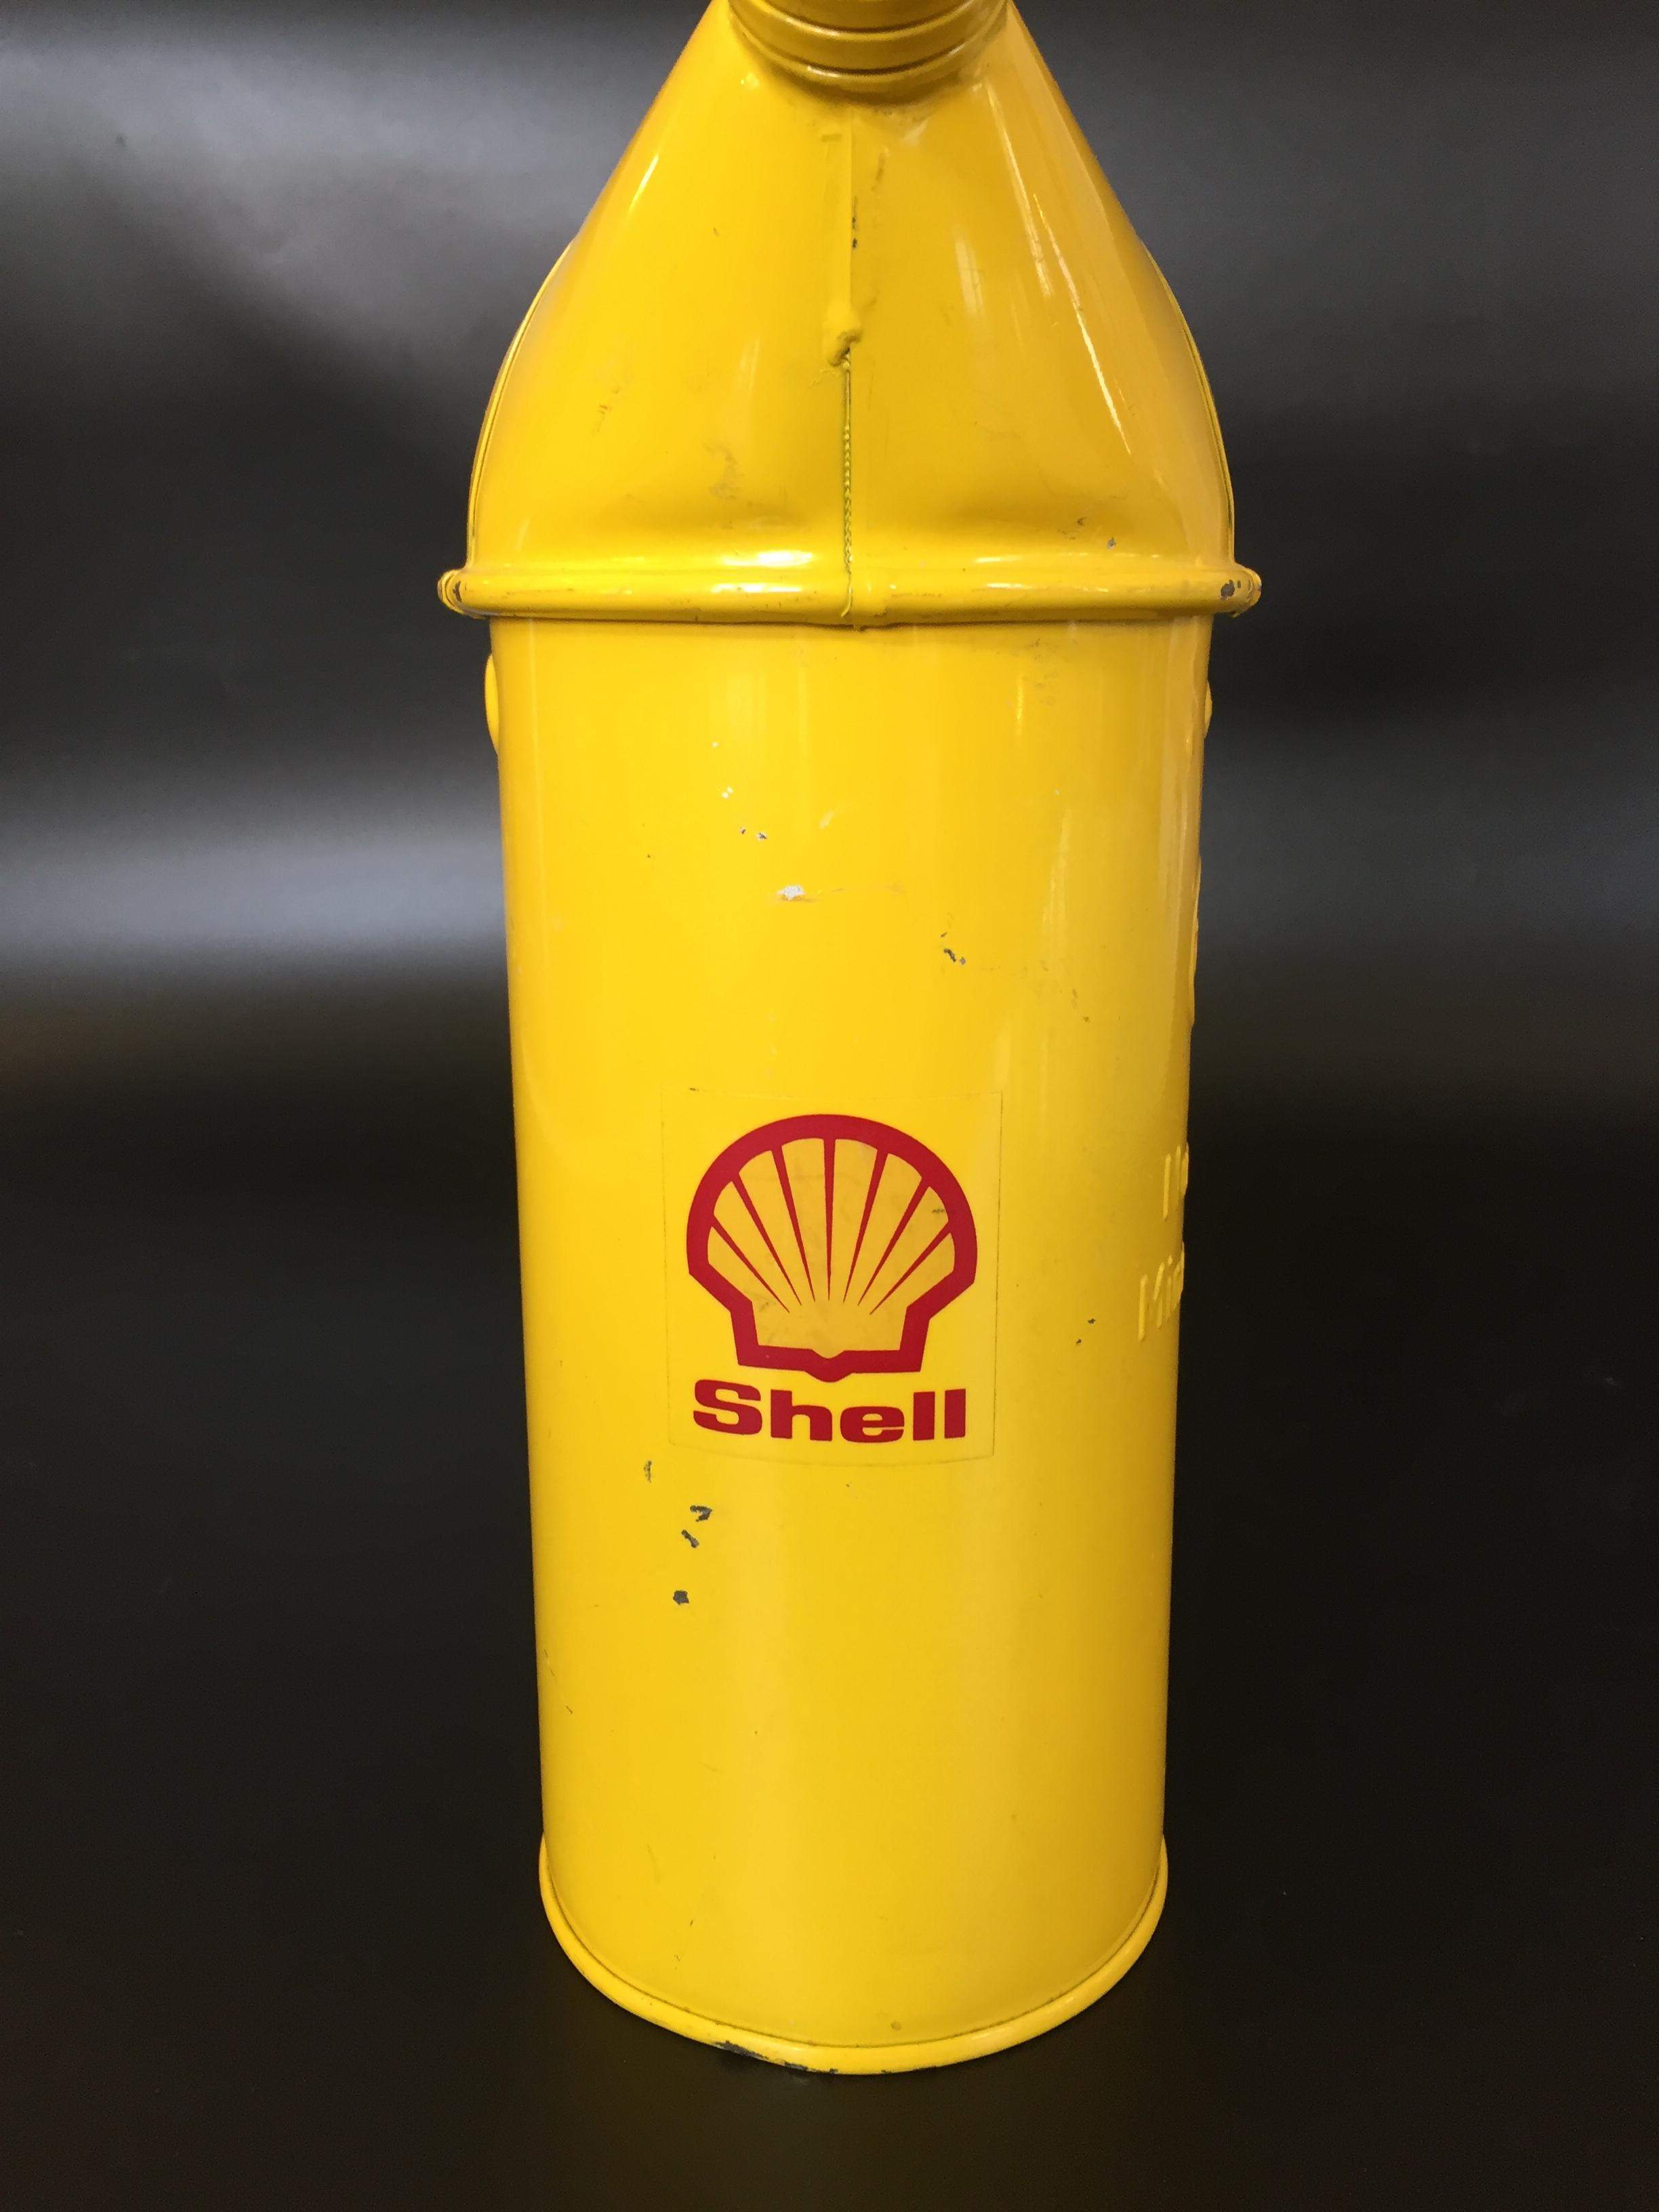 Shell Kanister